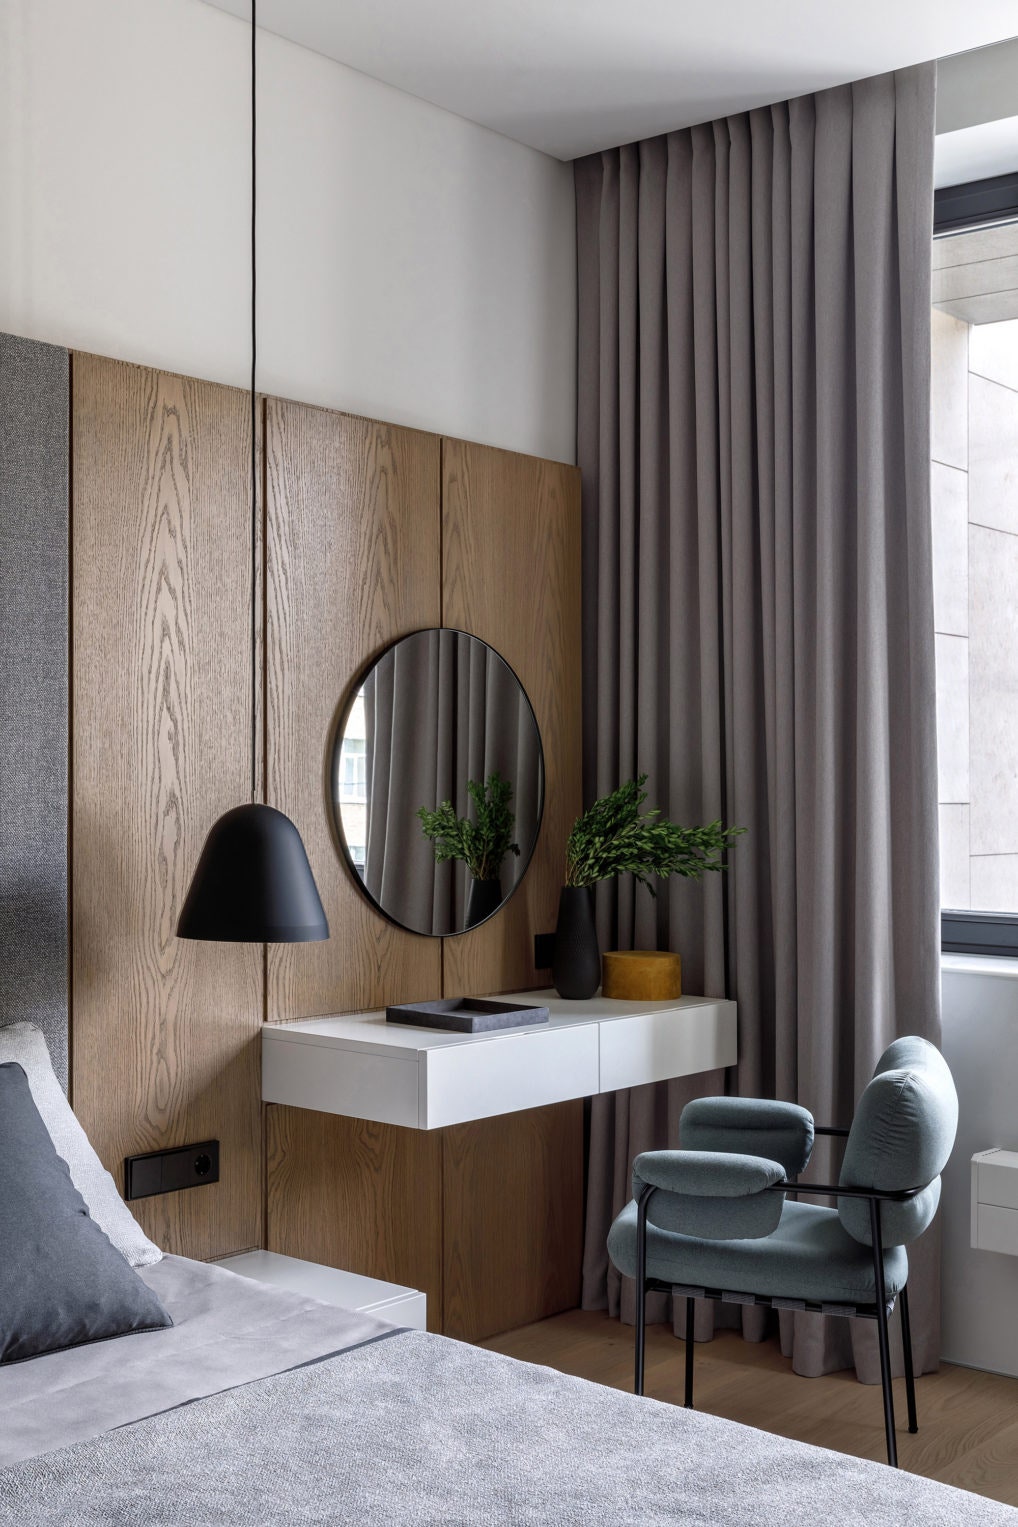 Туалетный столик в интерьере комнаты | Строительство и дизайн | Дзен